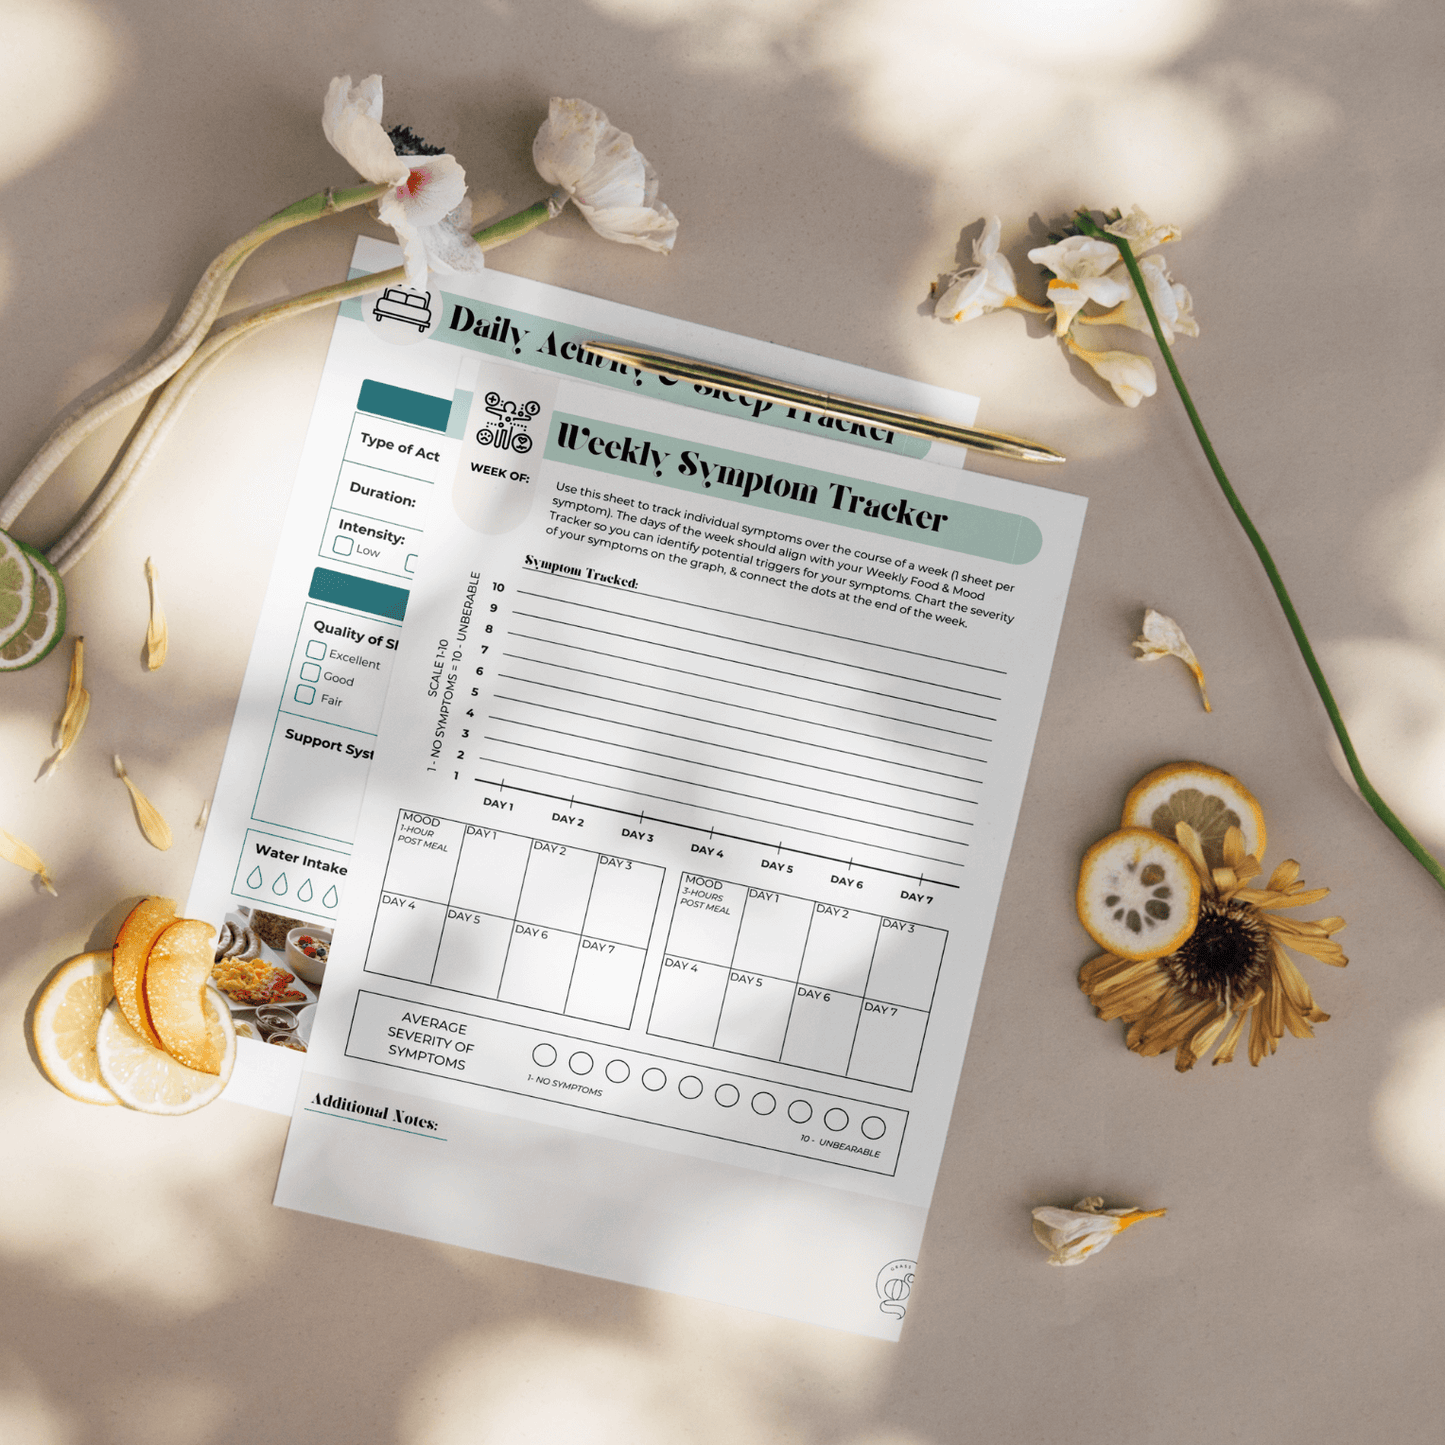 Food, Symptoms, and Sleep Journal (Peri- & Menopause)